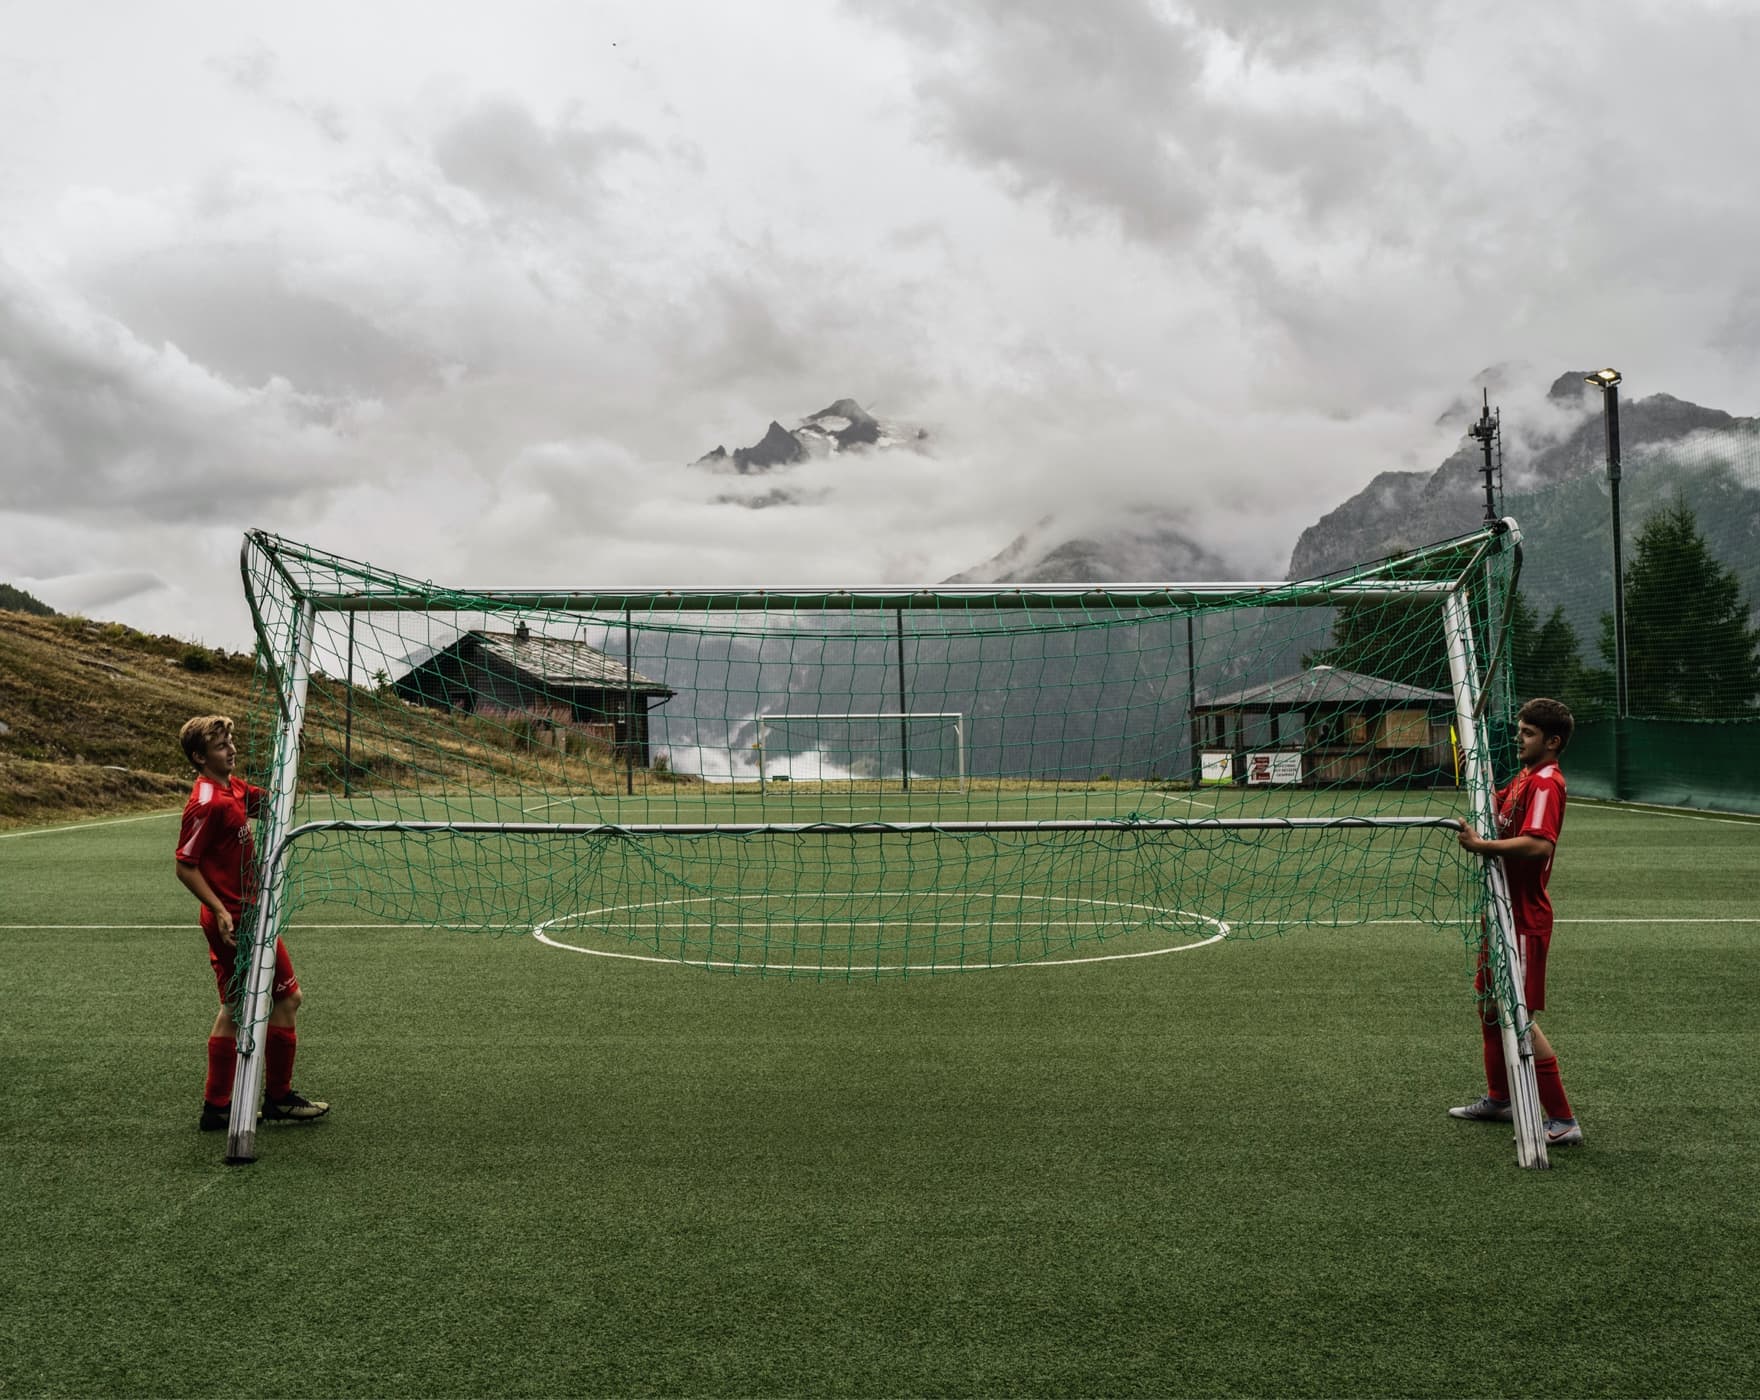 Disciplinære endnu engang Kælder Spil fodbold på det højeste niveau i de schweiziske alper. Nike DK